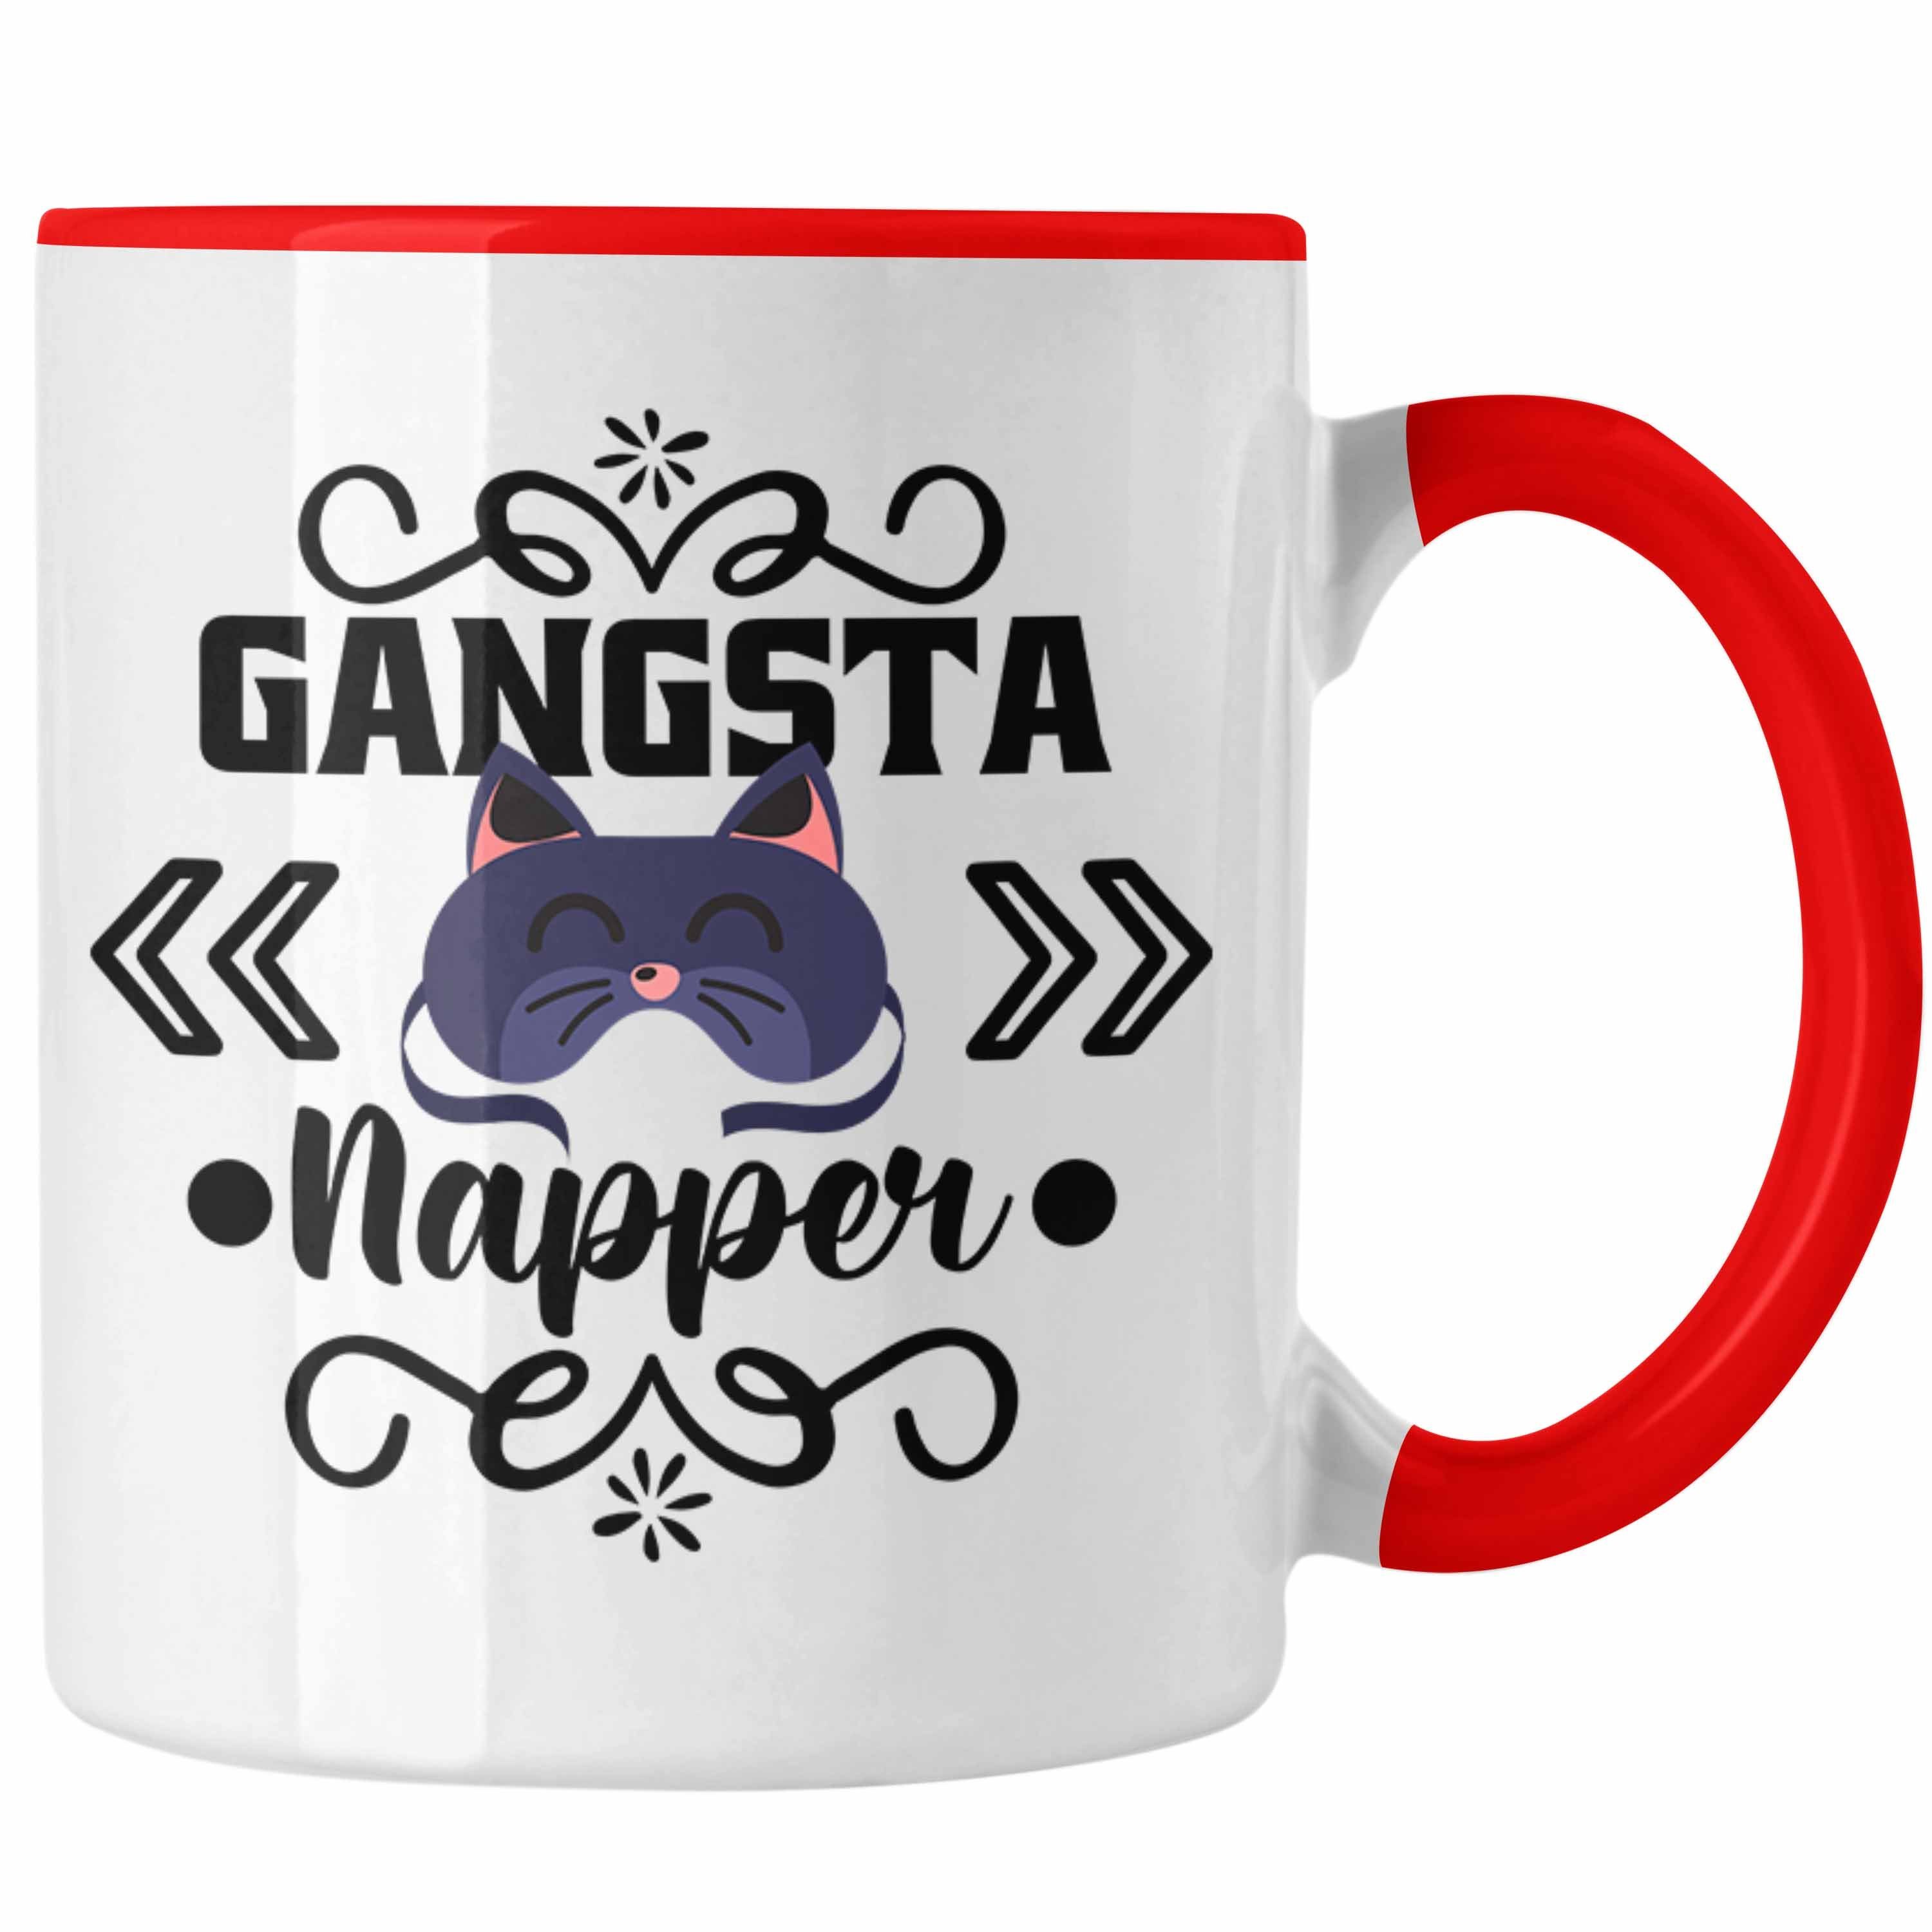 Trendation Nap Gangsta Lustige Frauen - Geschenk Mädchen Katze Napper Tasse Geschenkidee Rot Trendation Tasse